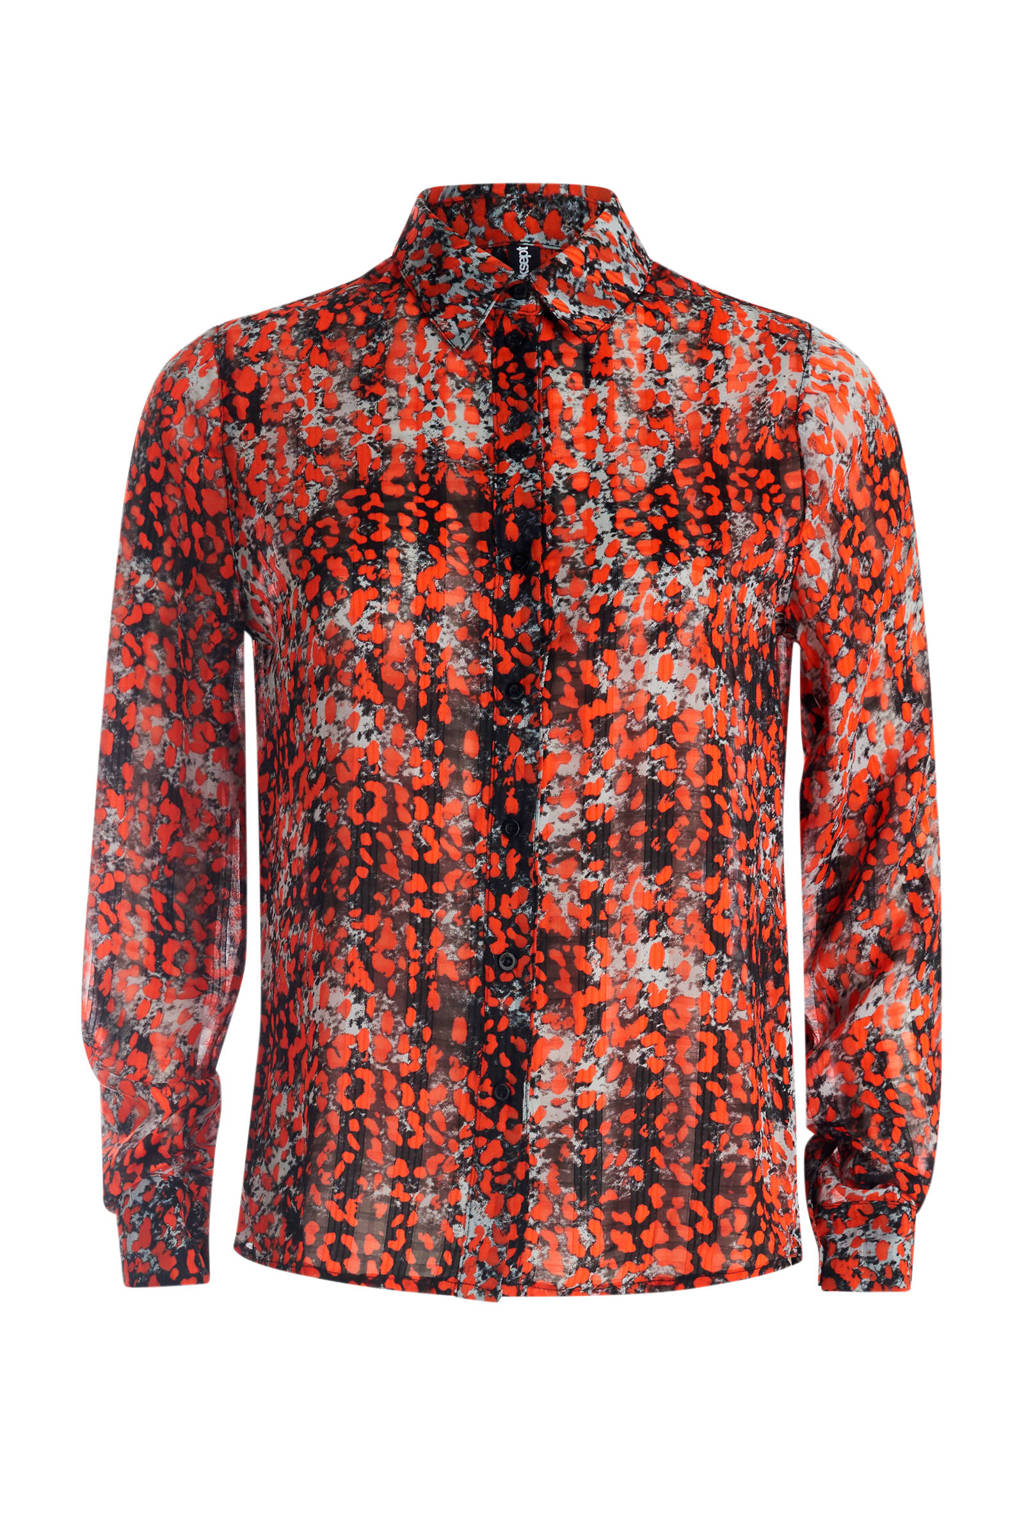 Necklet Pretentieloos toeter Shoeby Eksept blouse met panterprint rood/zwart/grijs | wehkamp